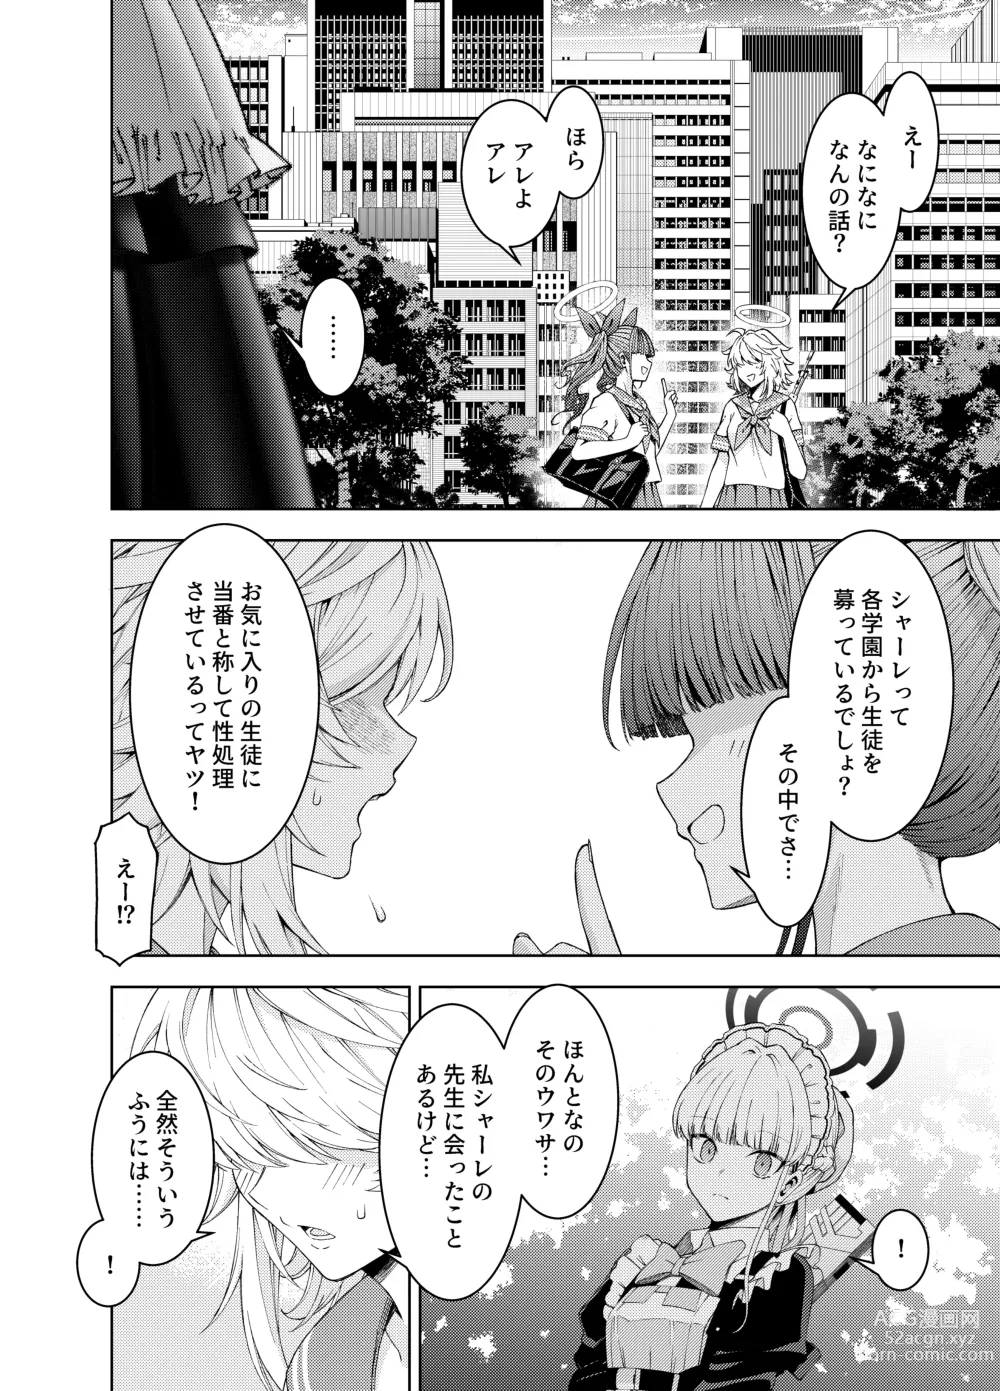 Page 4 of doujinshi Toki, Tokidoki